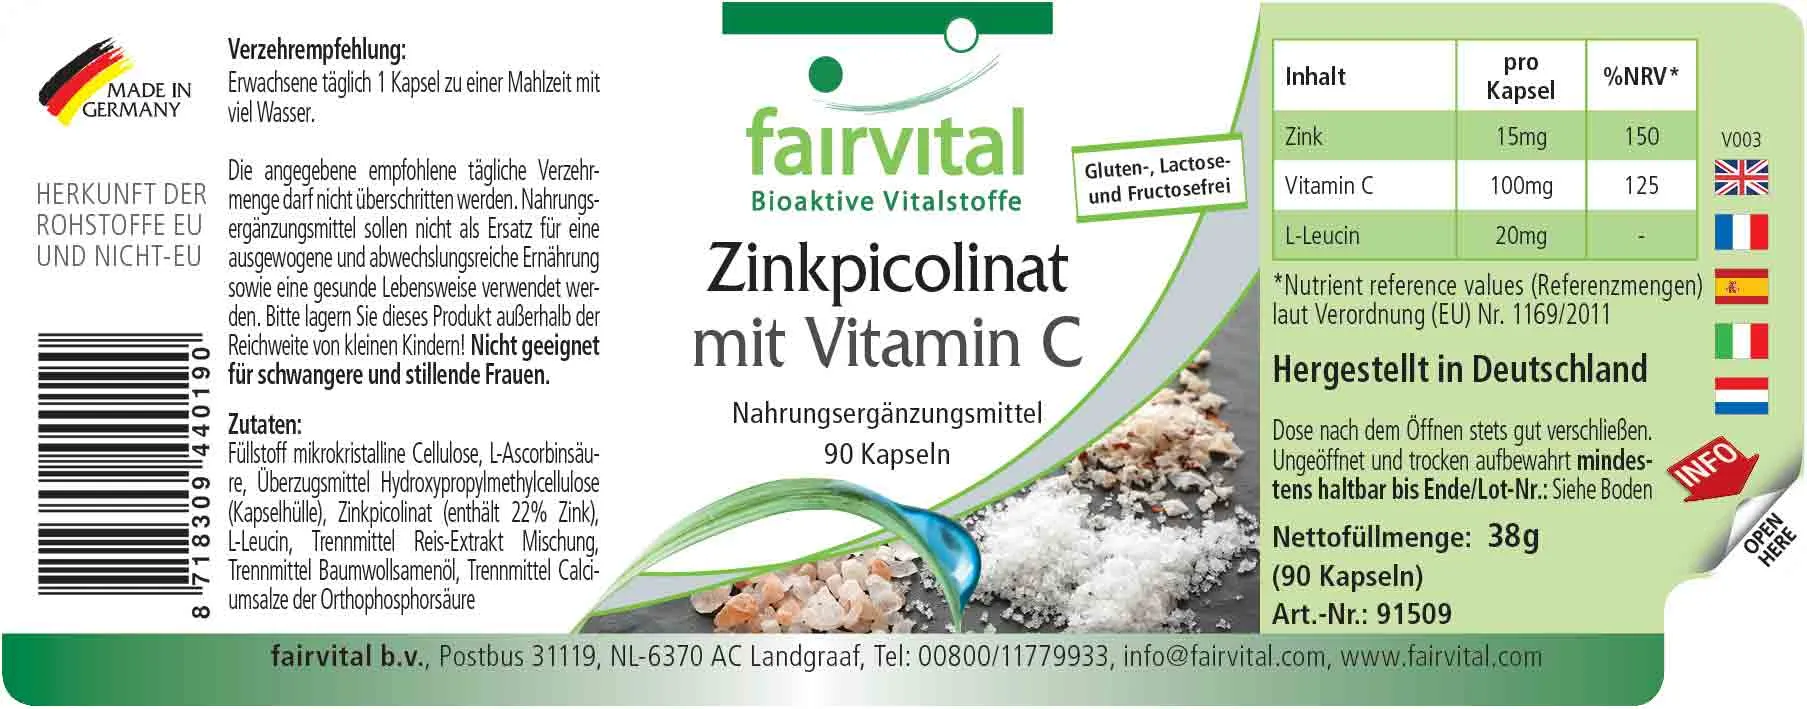 Picolinate de zinc avec vitamine C - 90 gélules